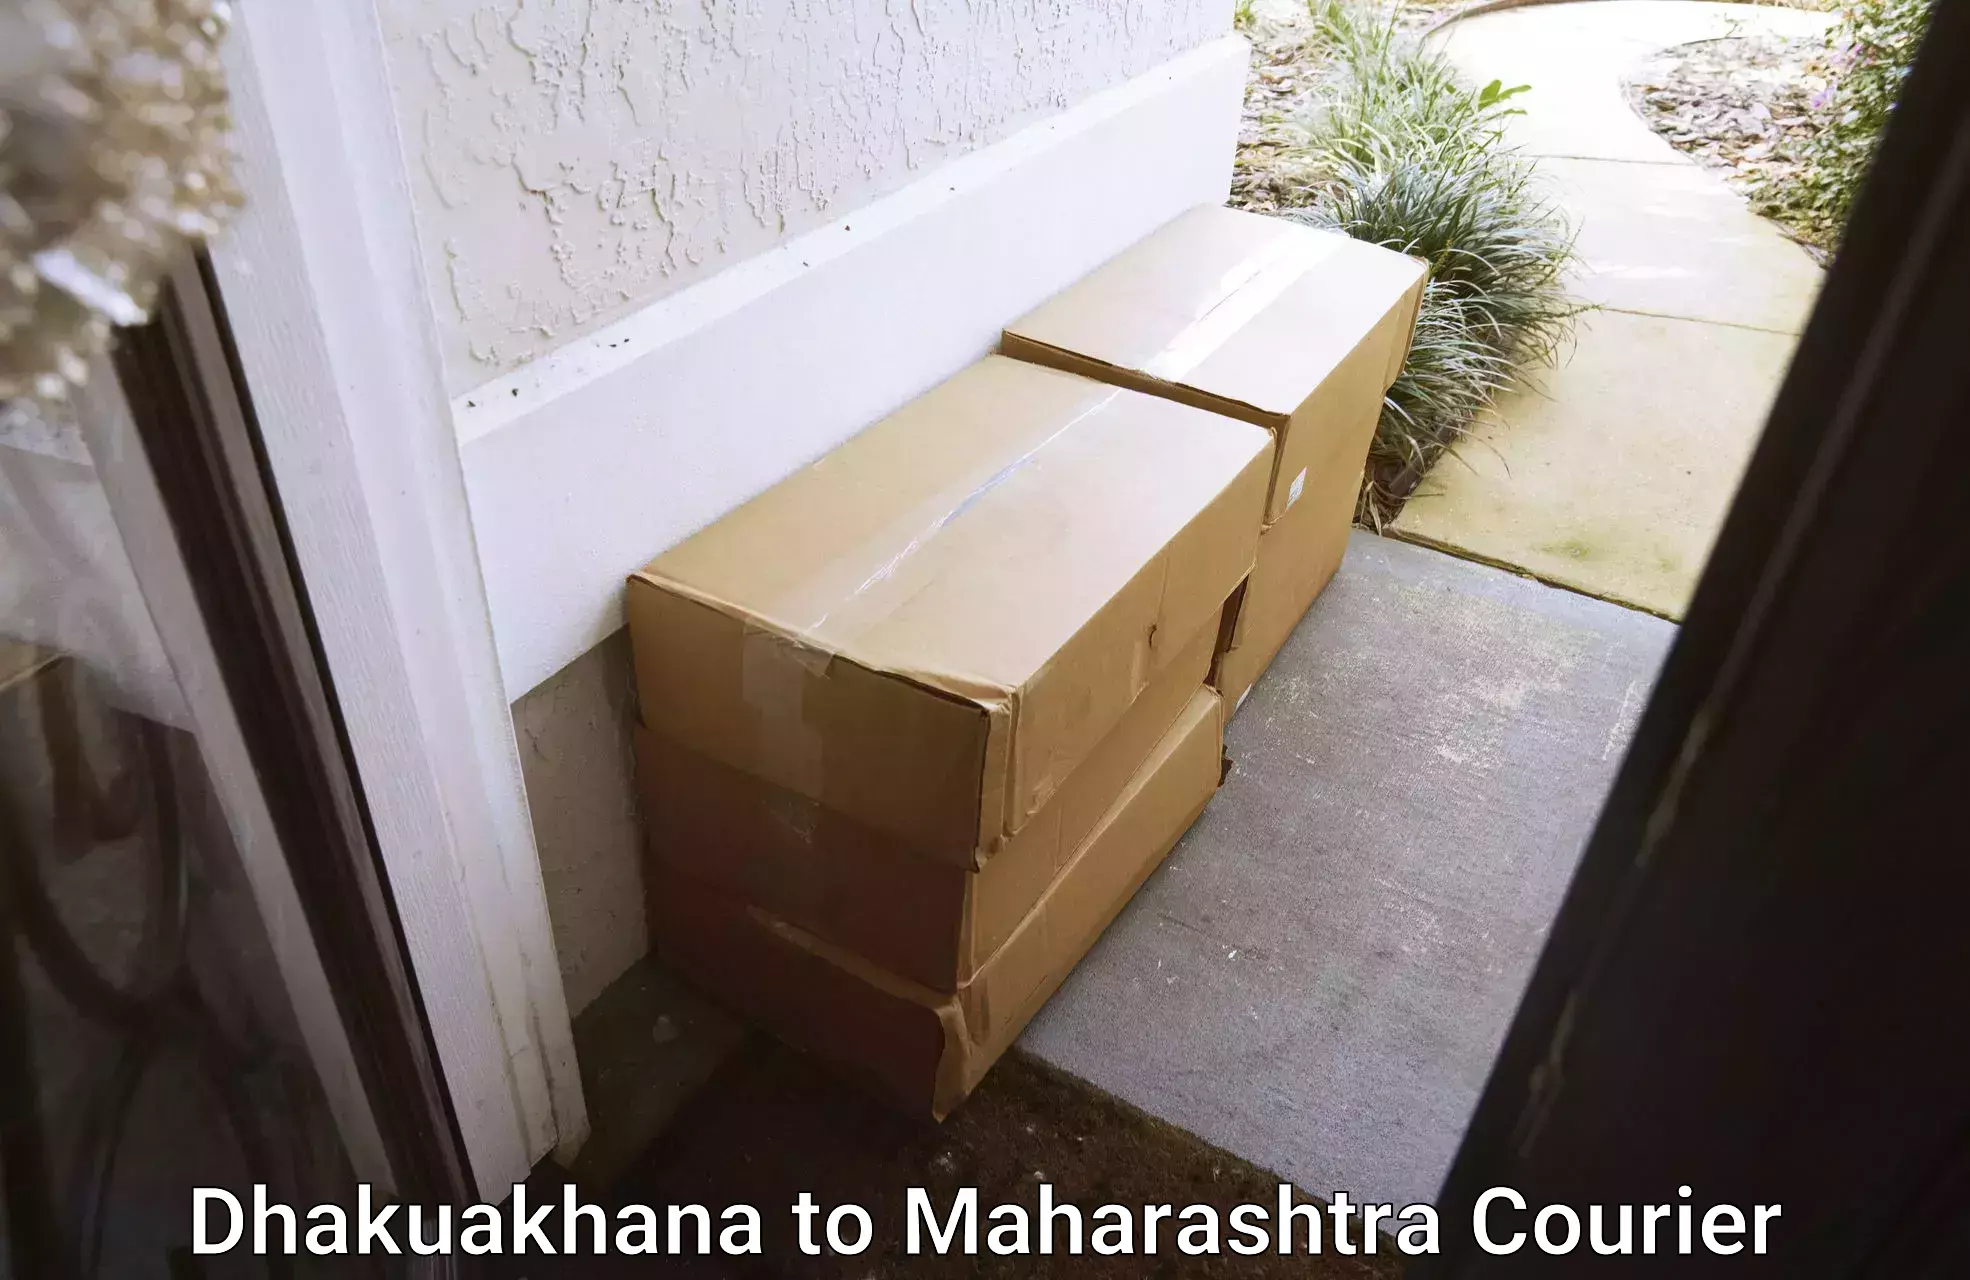 Reliable delivery network Dhakuakhana to Naldurg